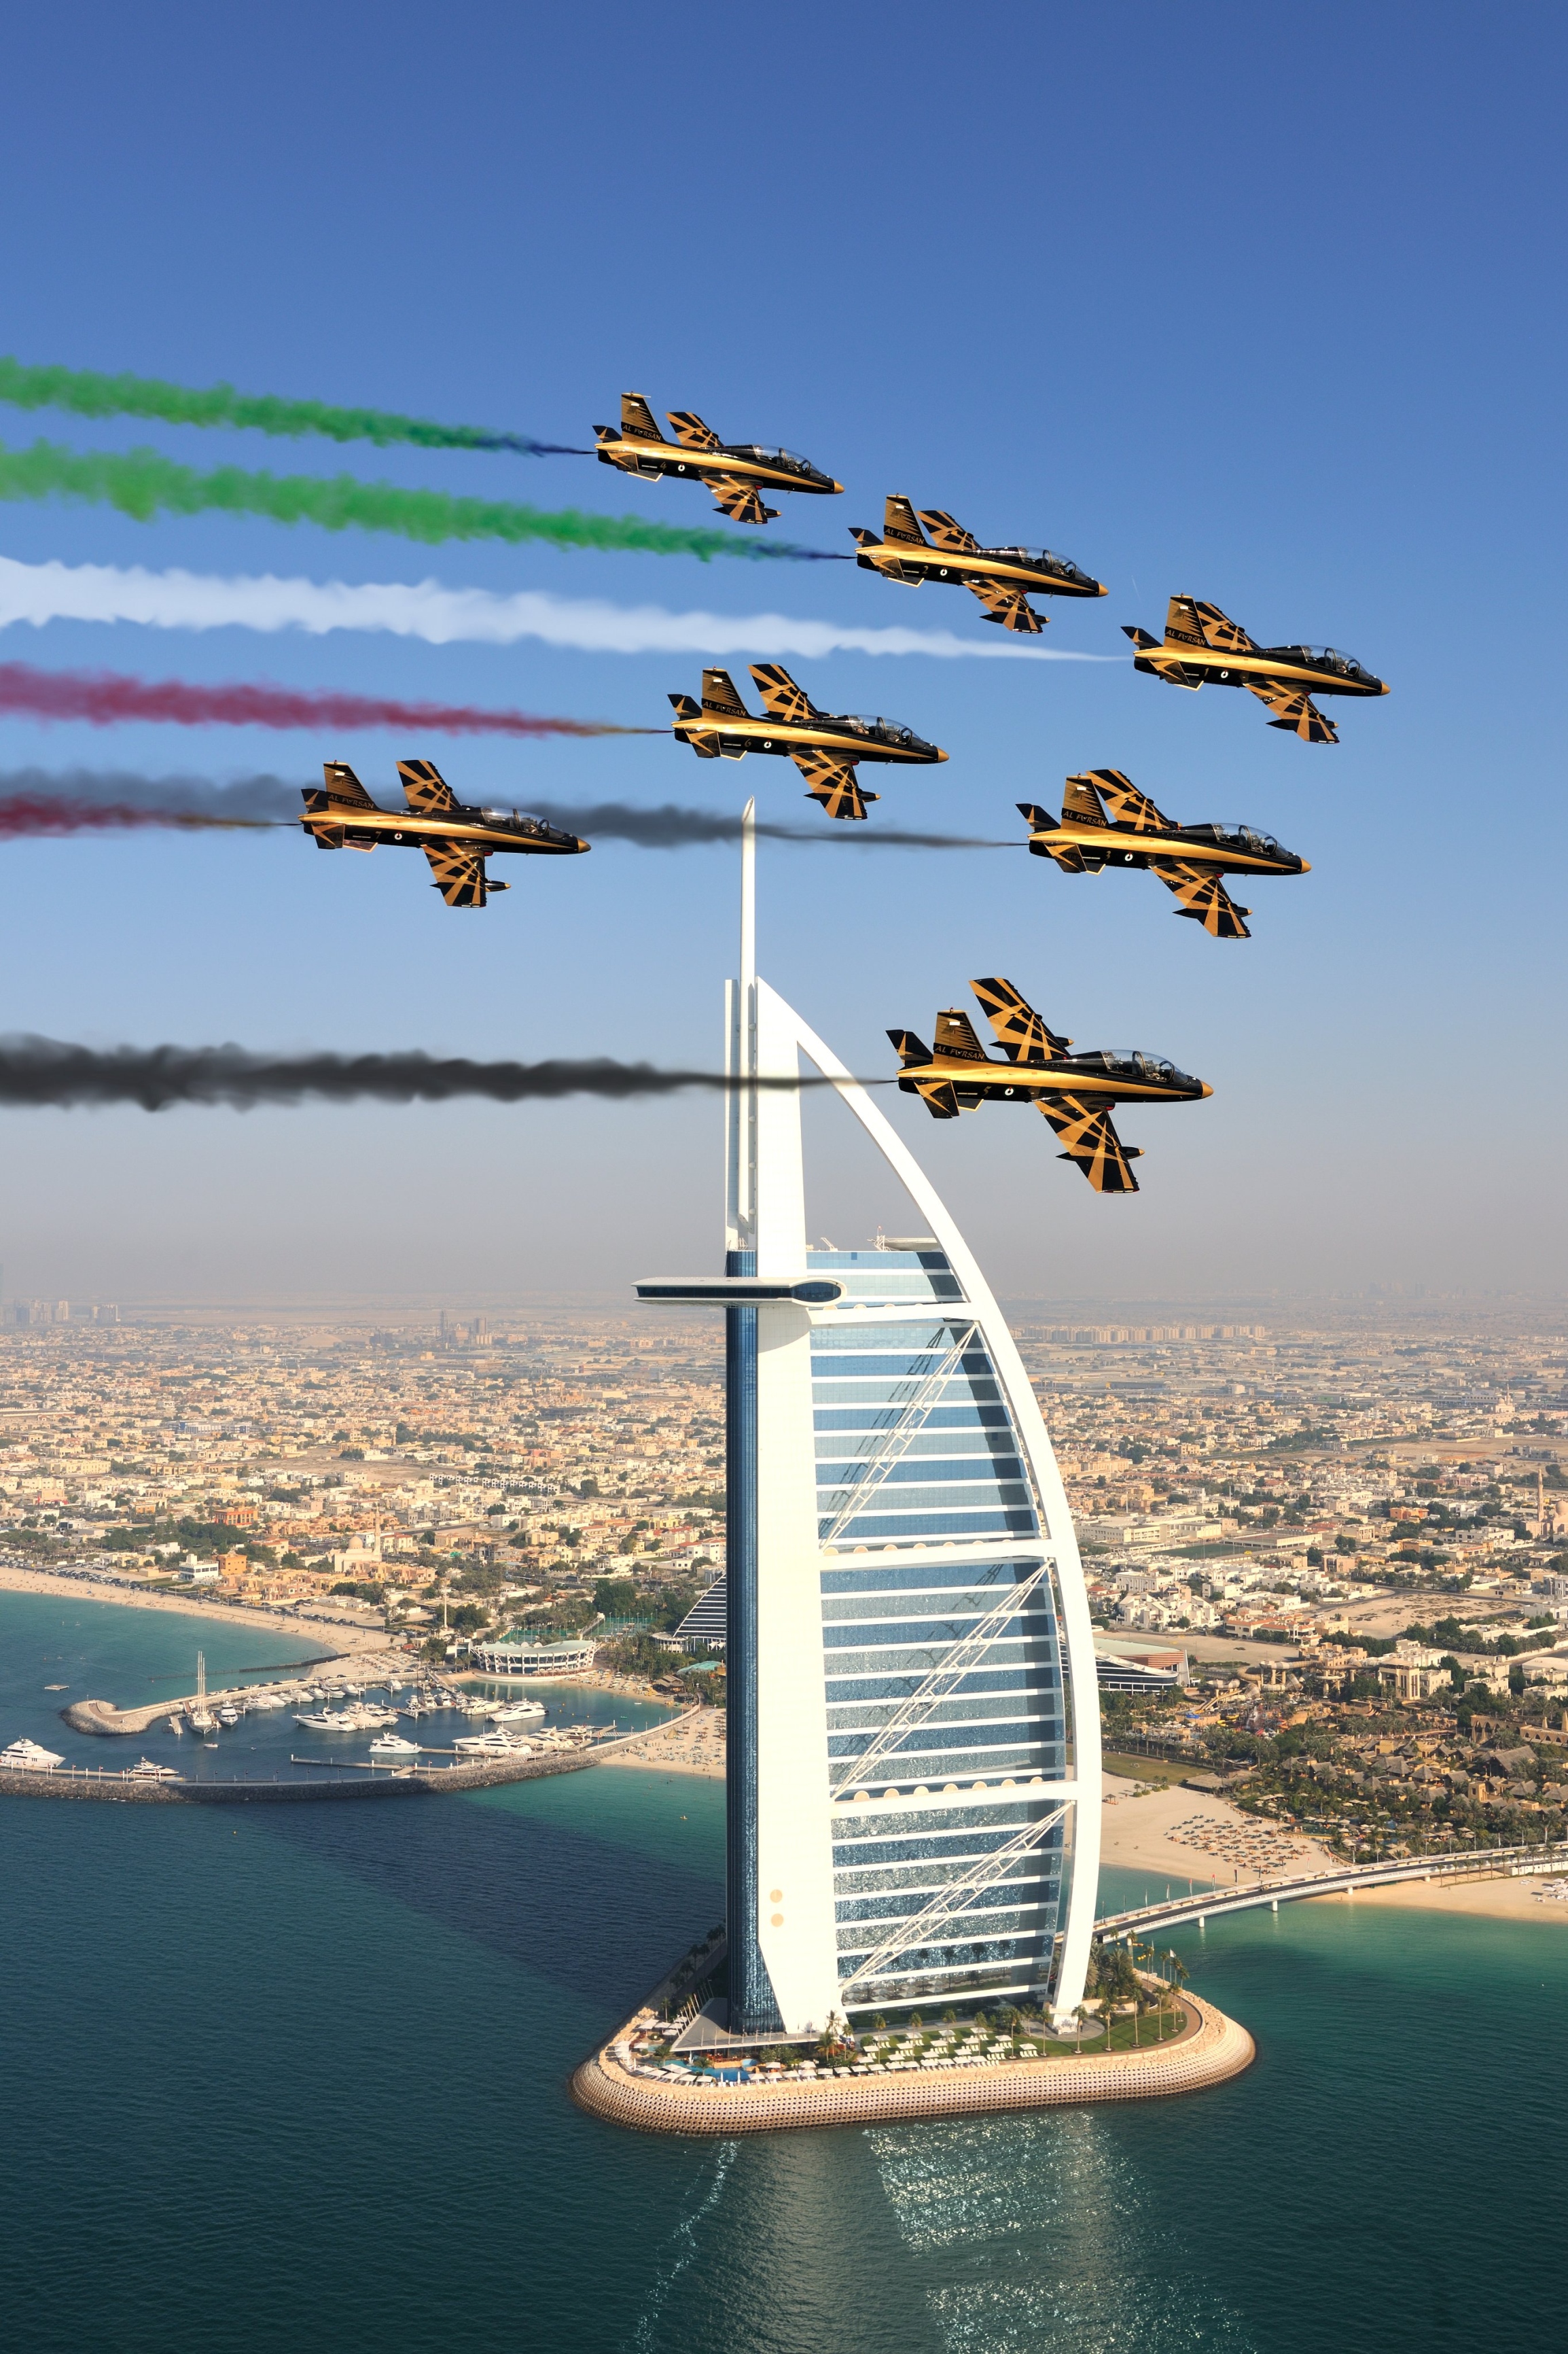 فريق "فرسان الإمارات" يقدم عروضاً جوّية مشوّقة في سماء دبي غد الإثنين